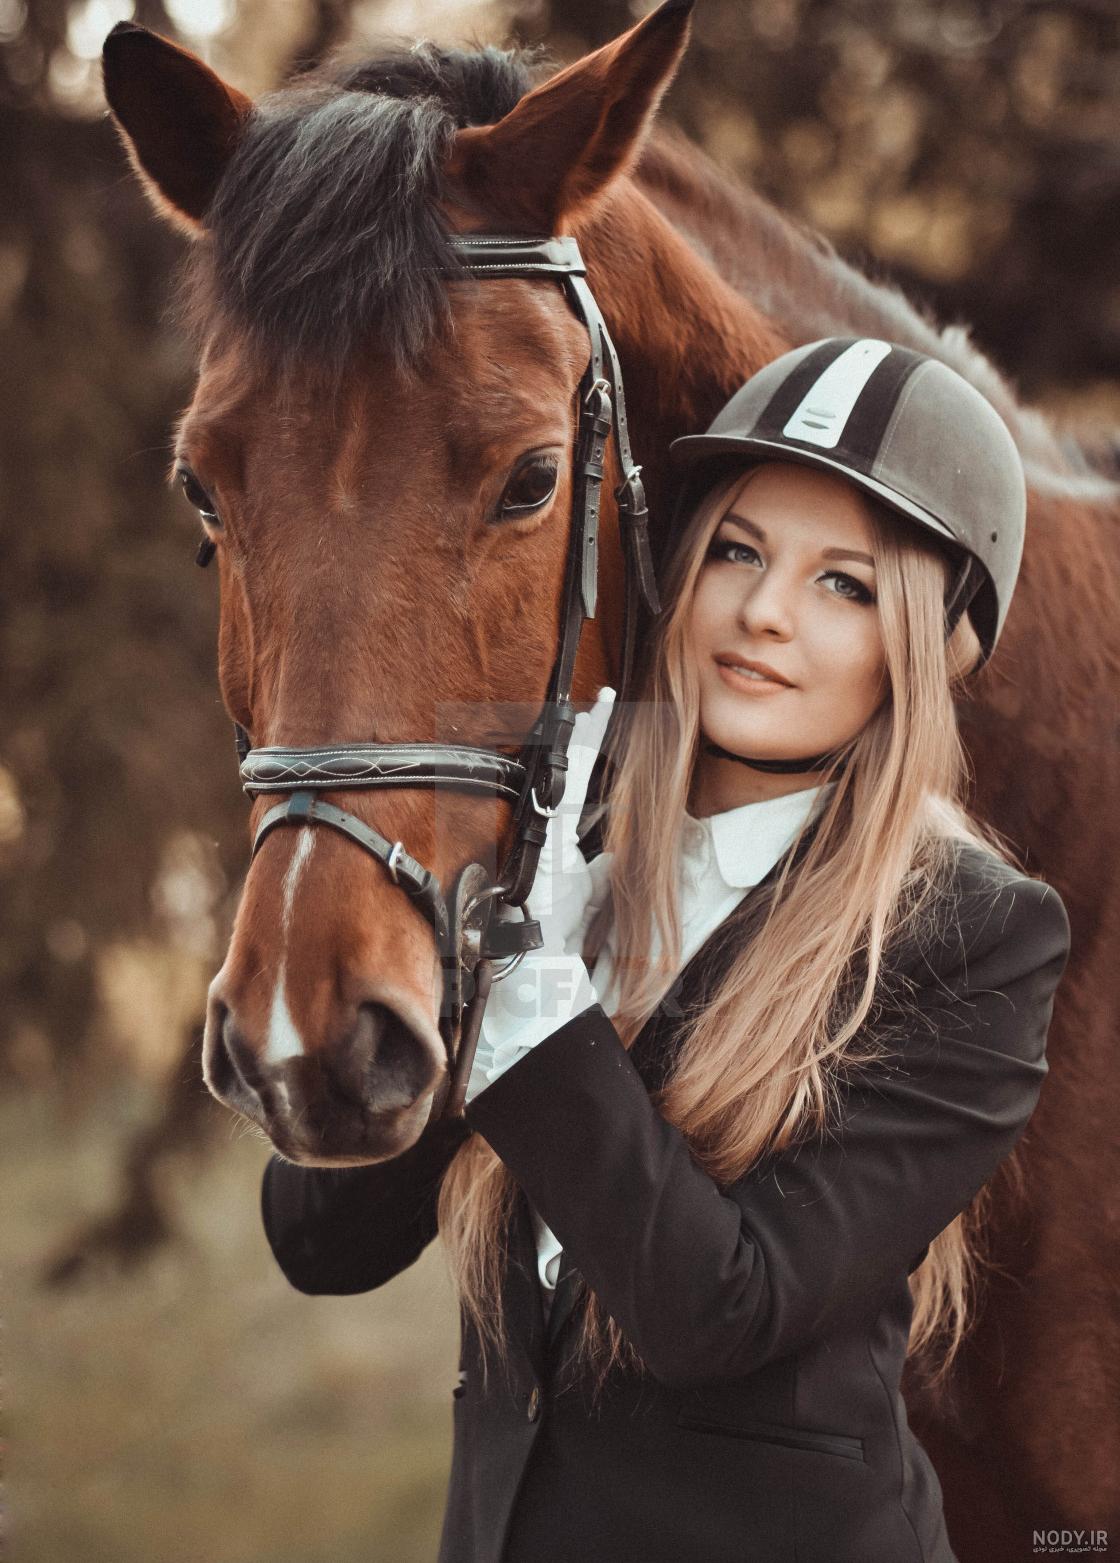 دانلود عکس پروفایل دختر با اسب